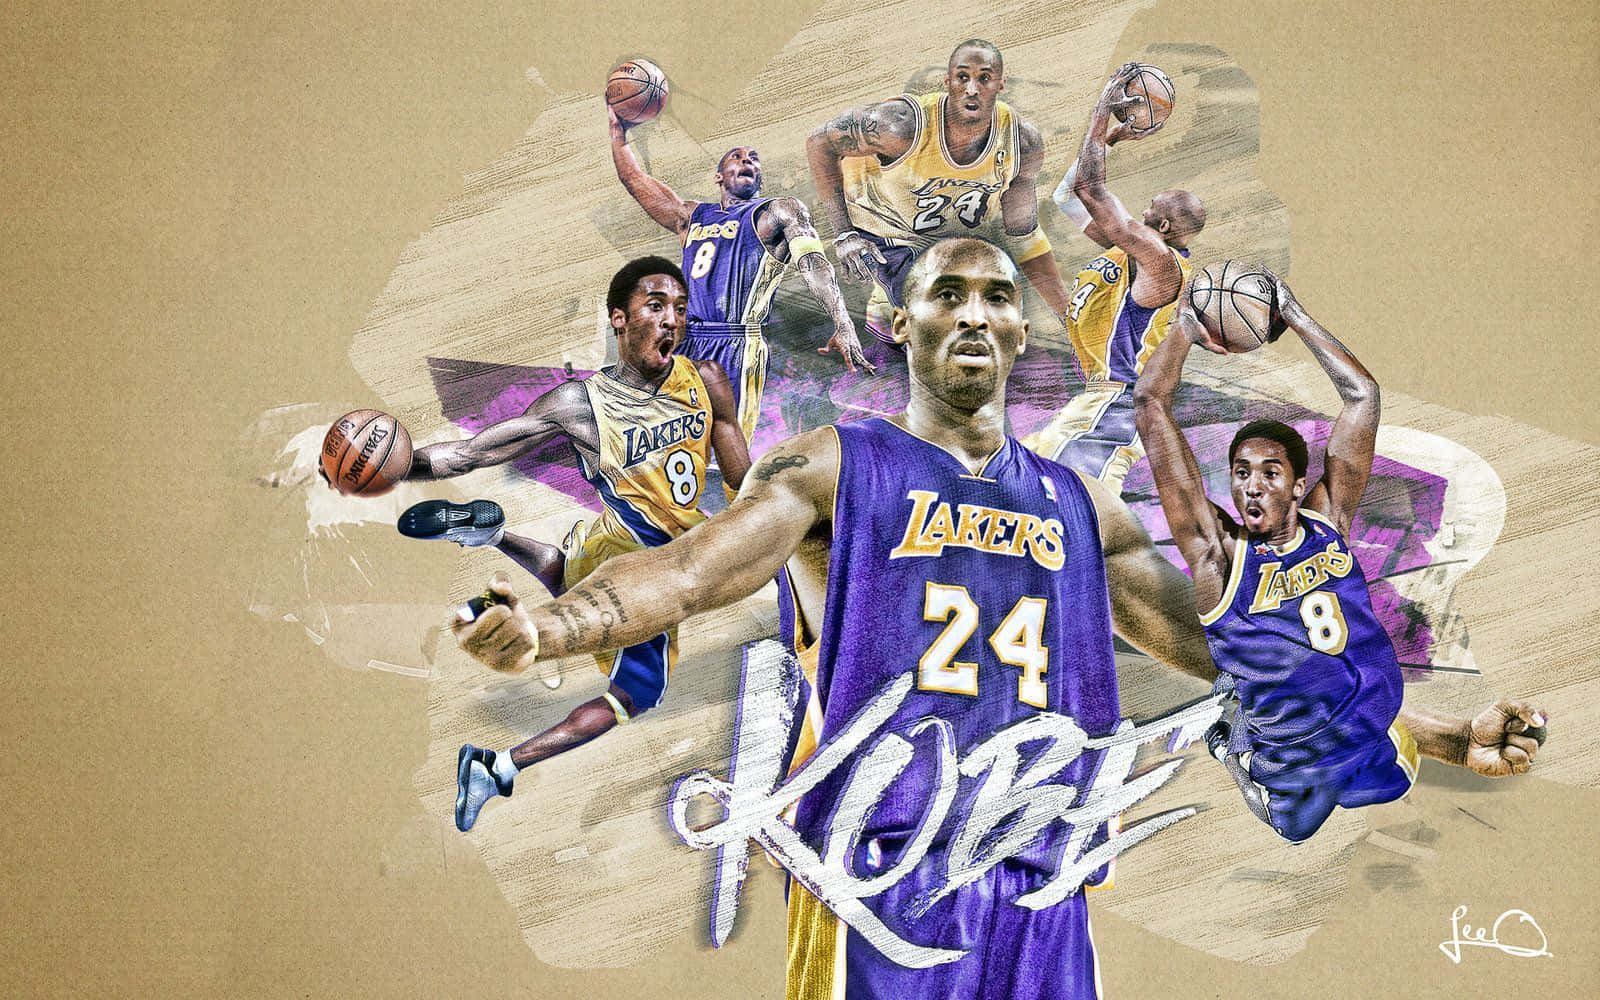 Lendáriojogador De Basquete Do Los Angeles Lakers, Kobe Bryant